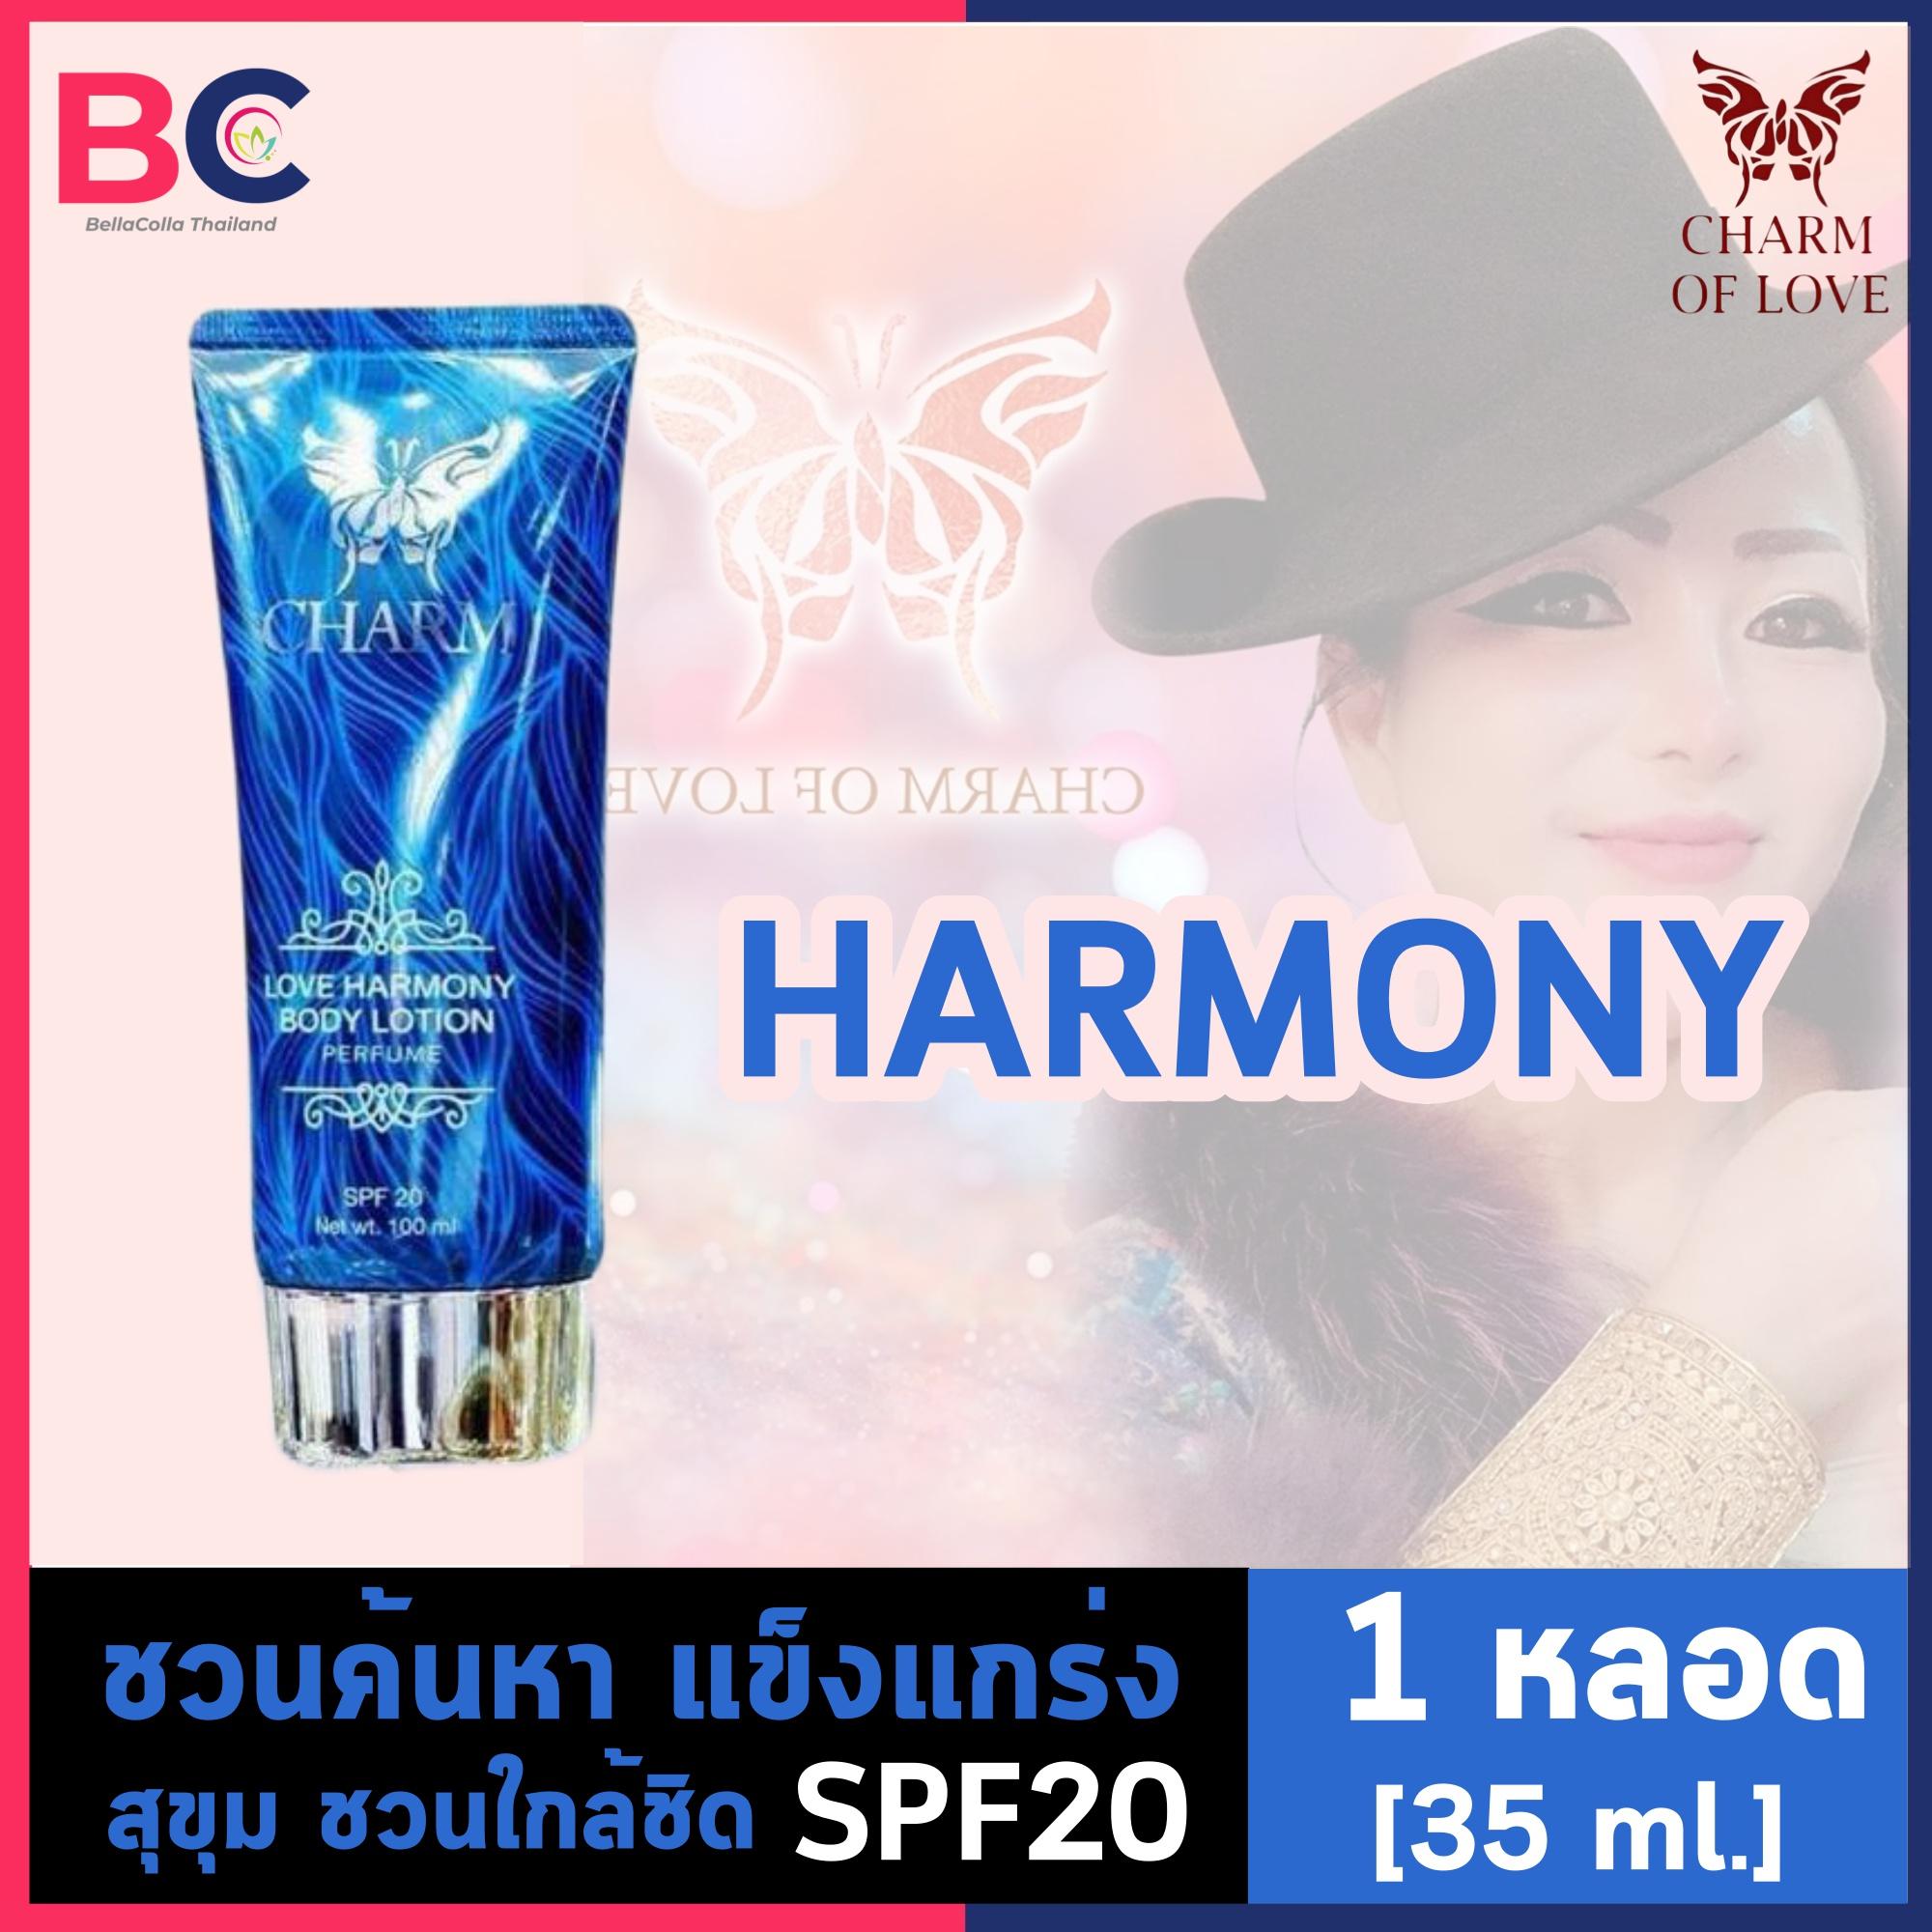 โลชั่นน้ําหอม charm of love [35 ml.] [กลิ่น HARMONY - สีฟ้า] Body Lotion Perfume บำรุงผิว กันแดด โลชั่นน้ําหอมฟีโรโมน by BellaColla Thailand